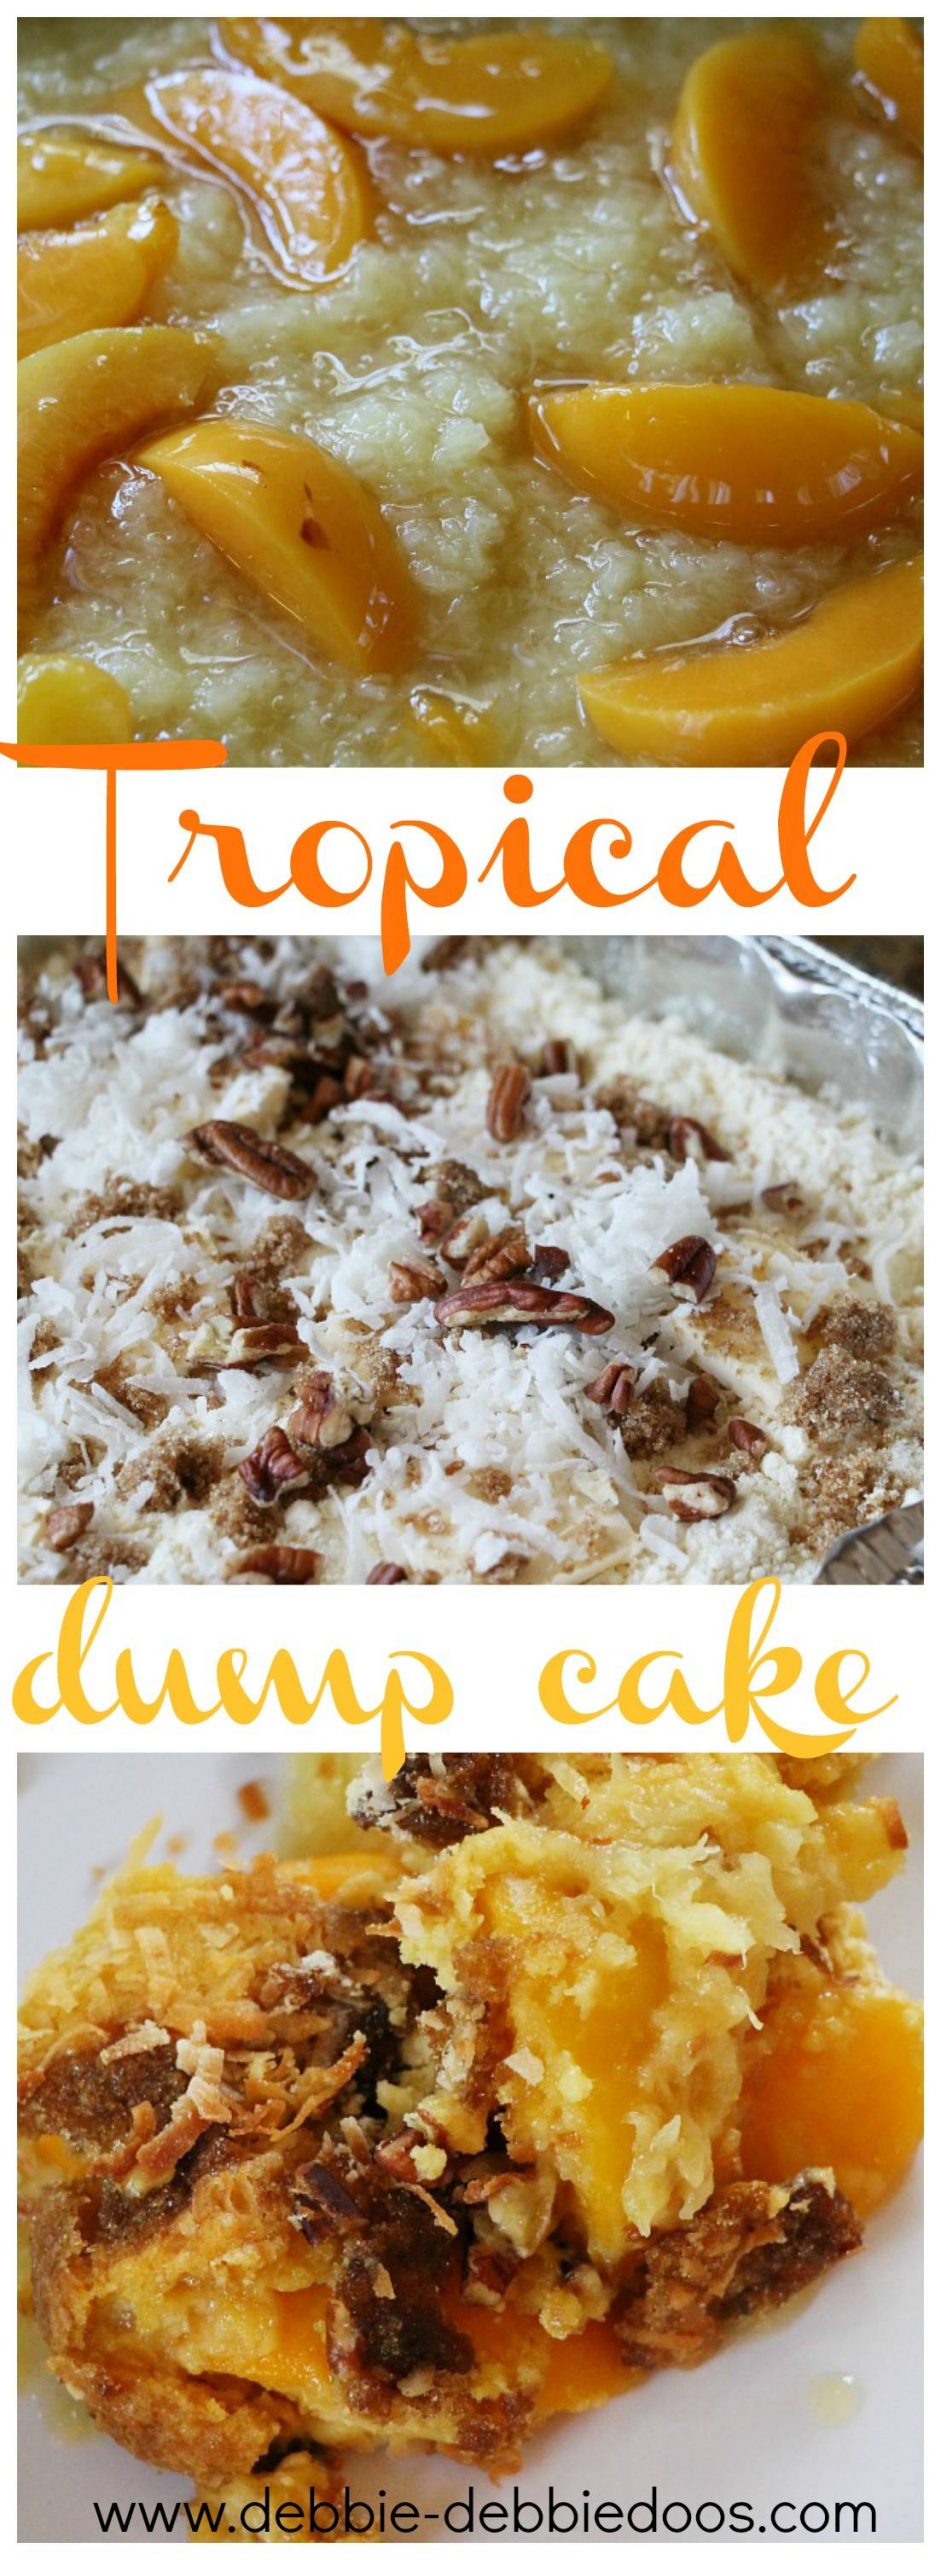 How to make a tropical dump cake - Debbiedoos